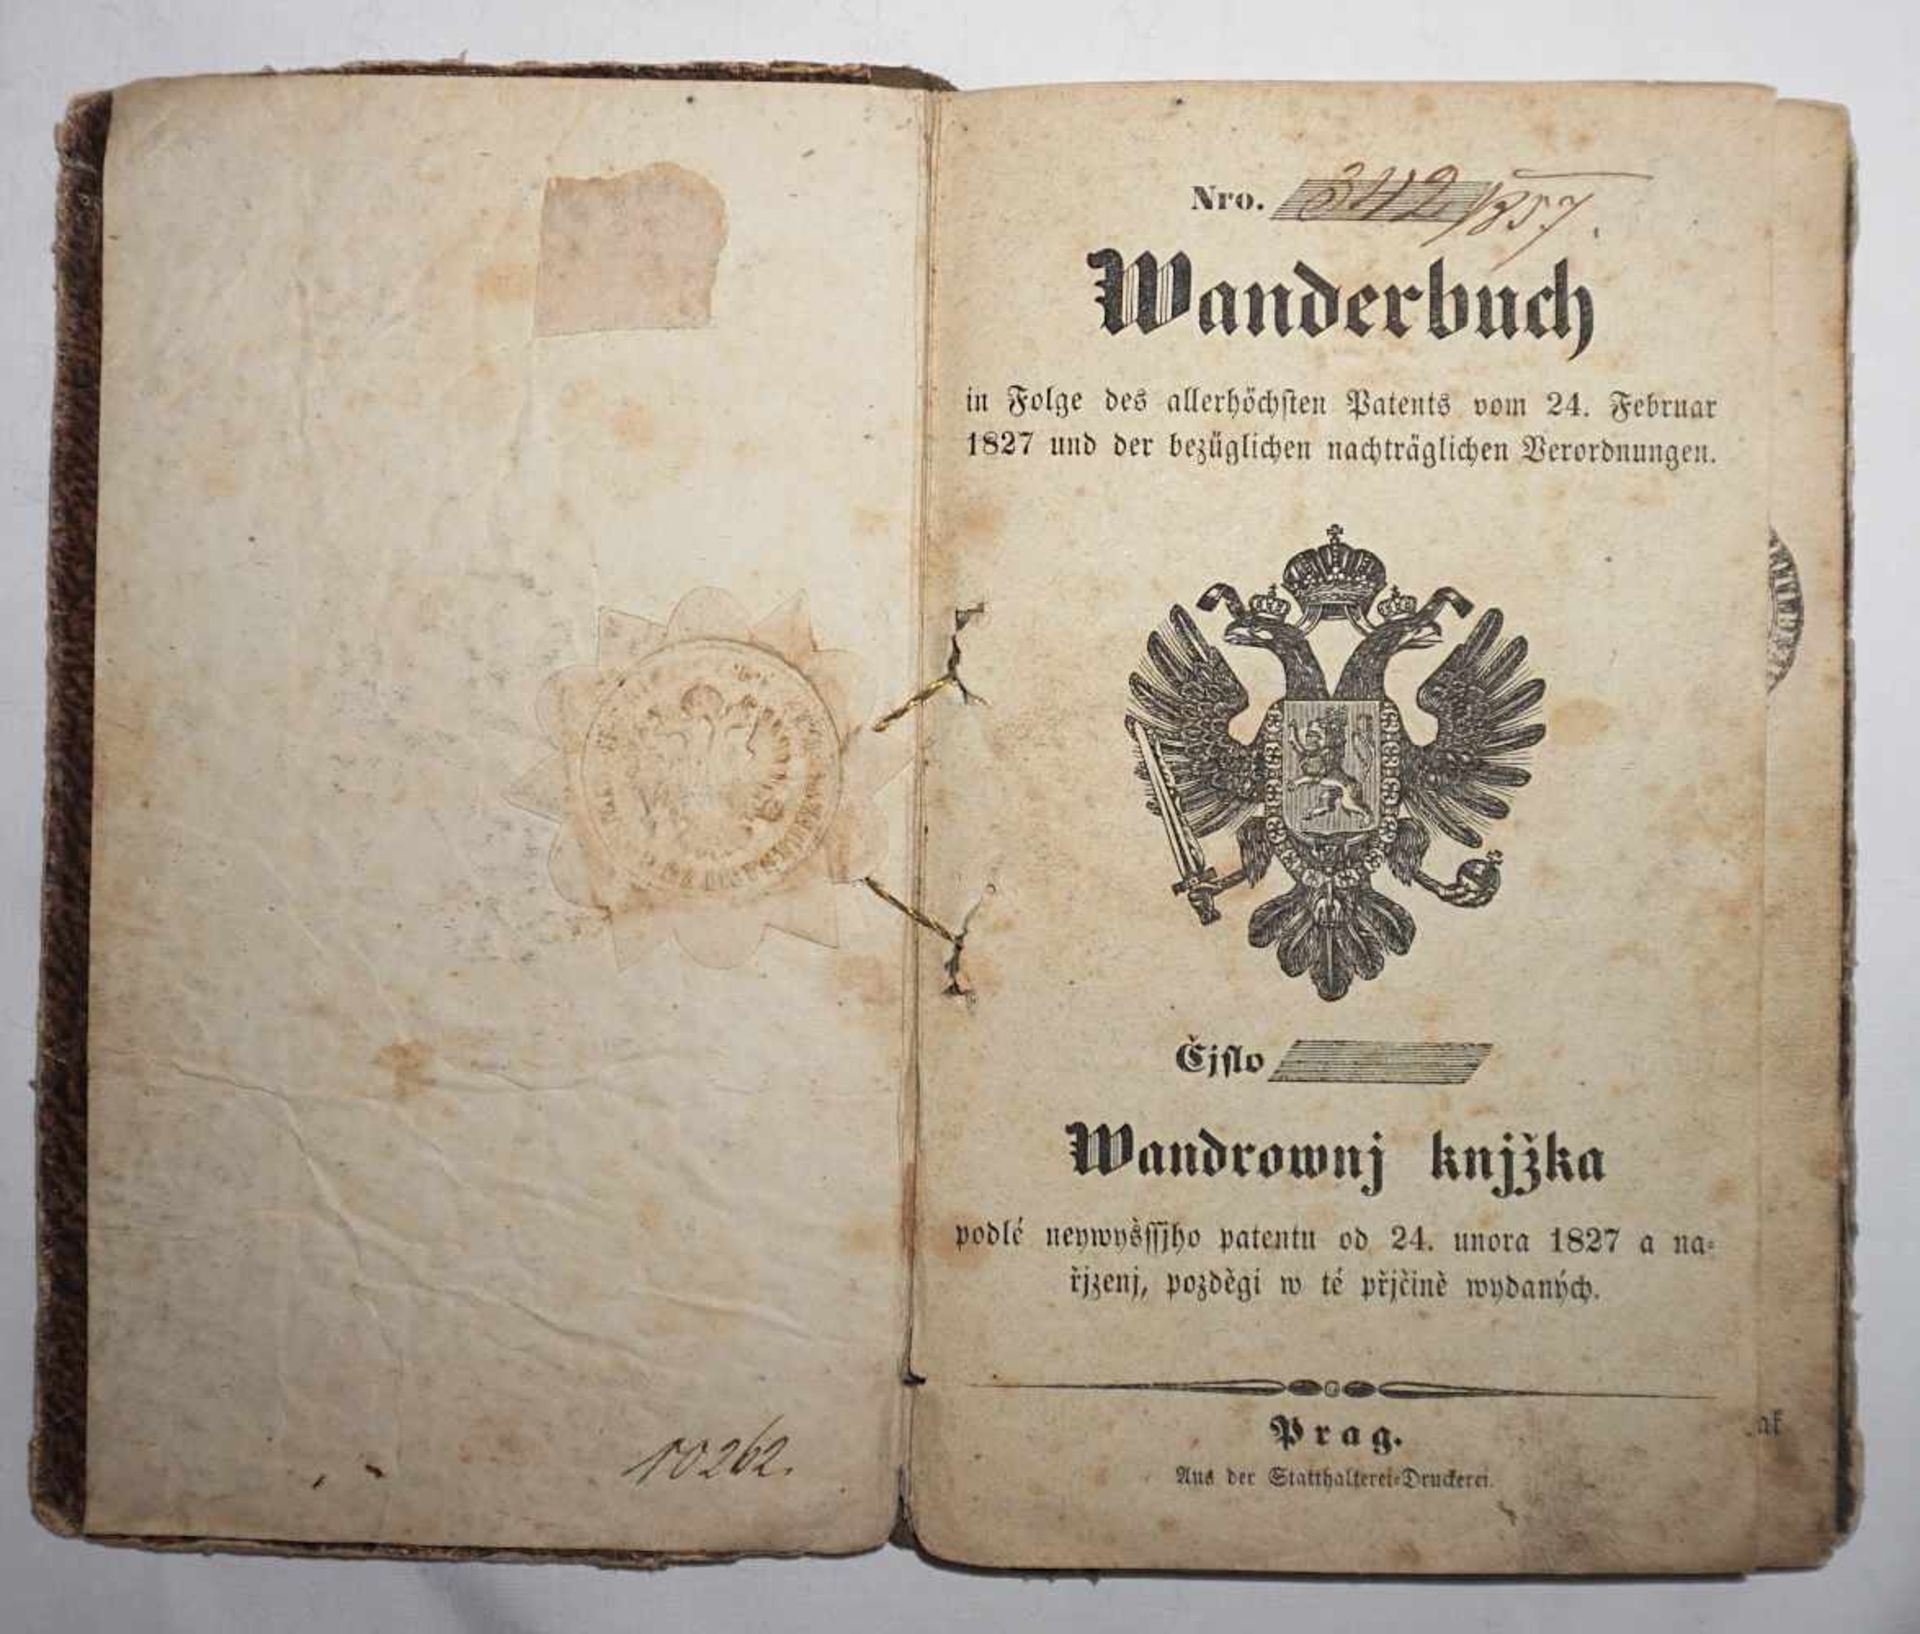 1 Wanderbuch, Statthalterei-Druckerei Prag dat. 1827mit Belehrungen, Beglaubigungsstem